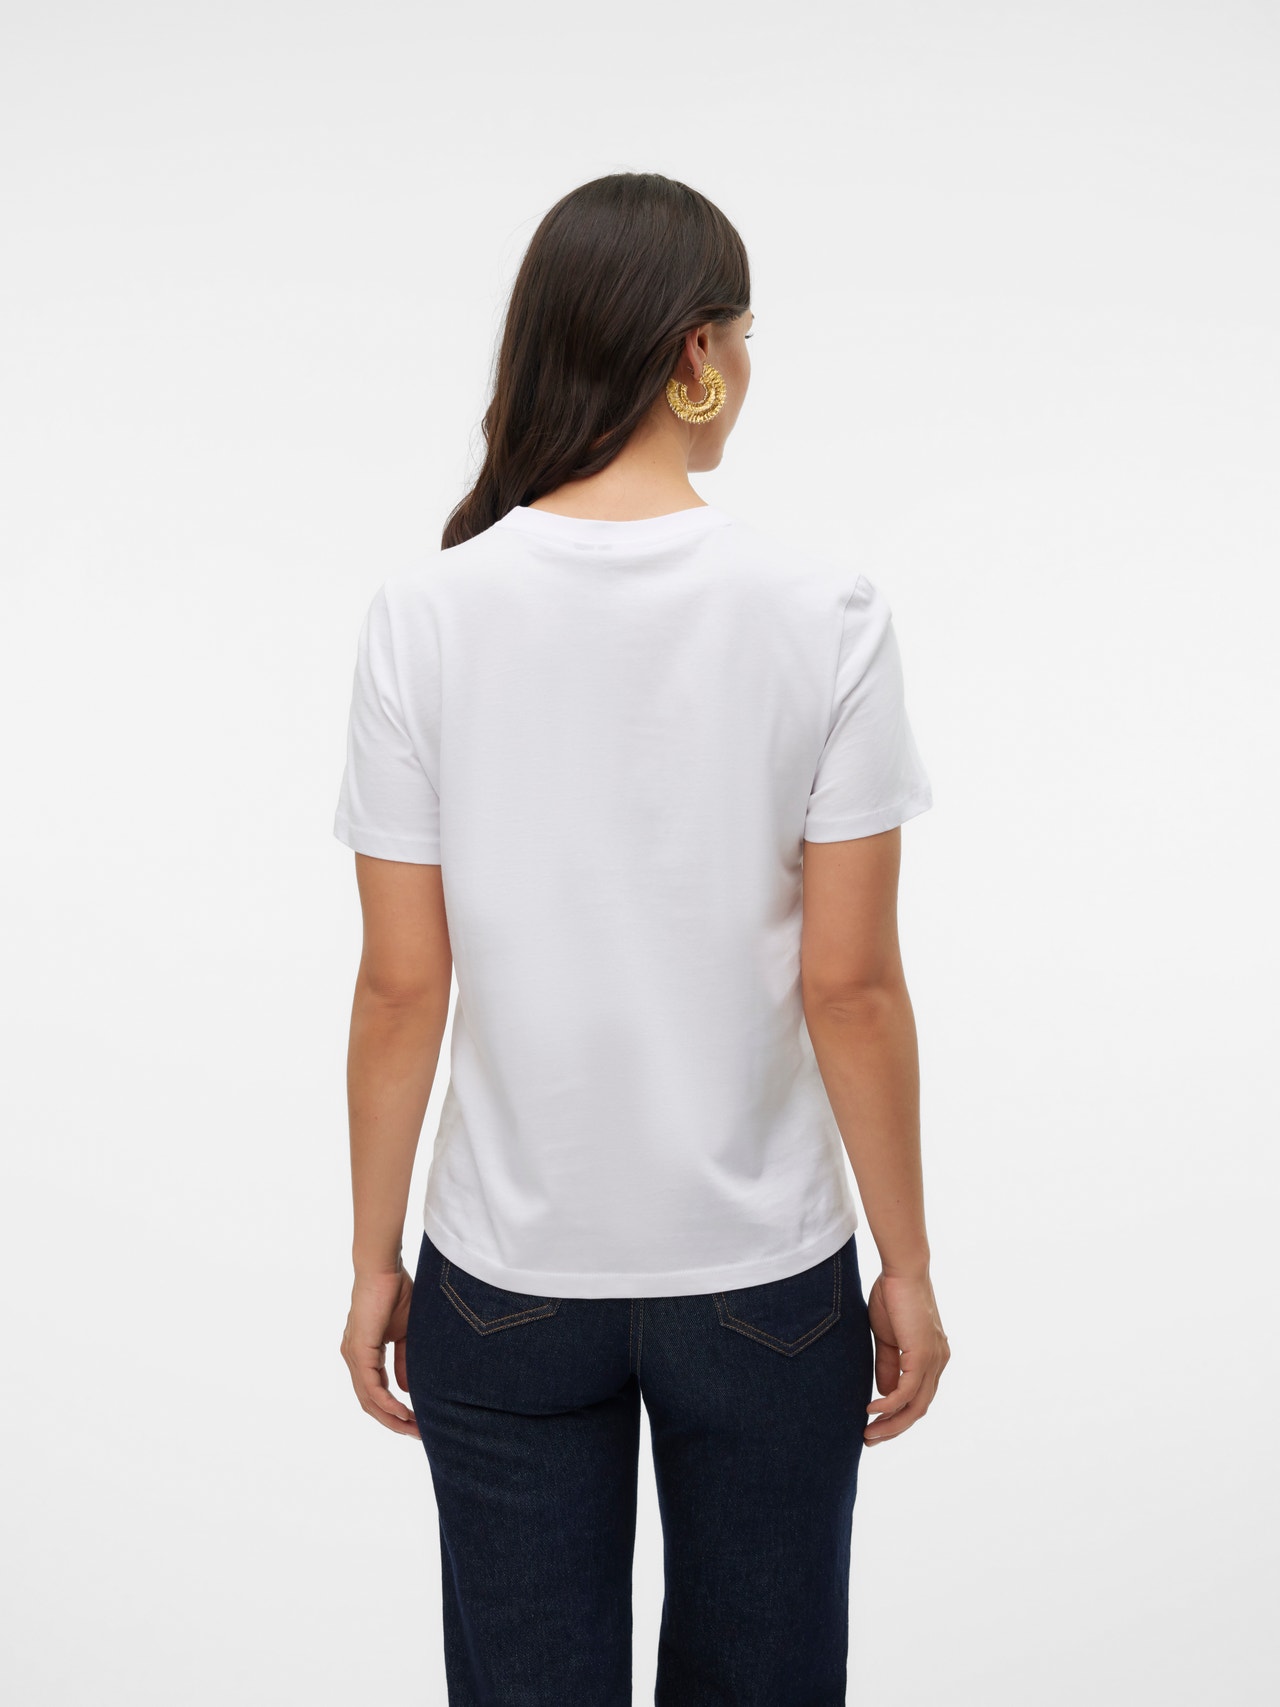 Vero Moda VMPAULINA T-shirts -Bright White - 10316991